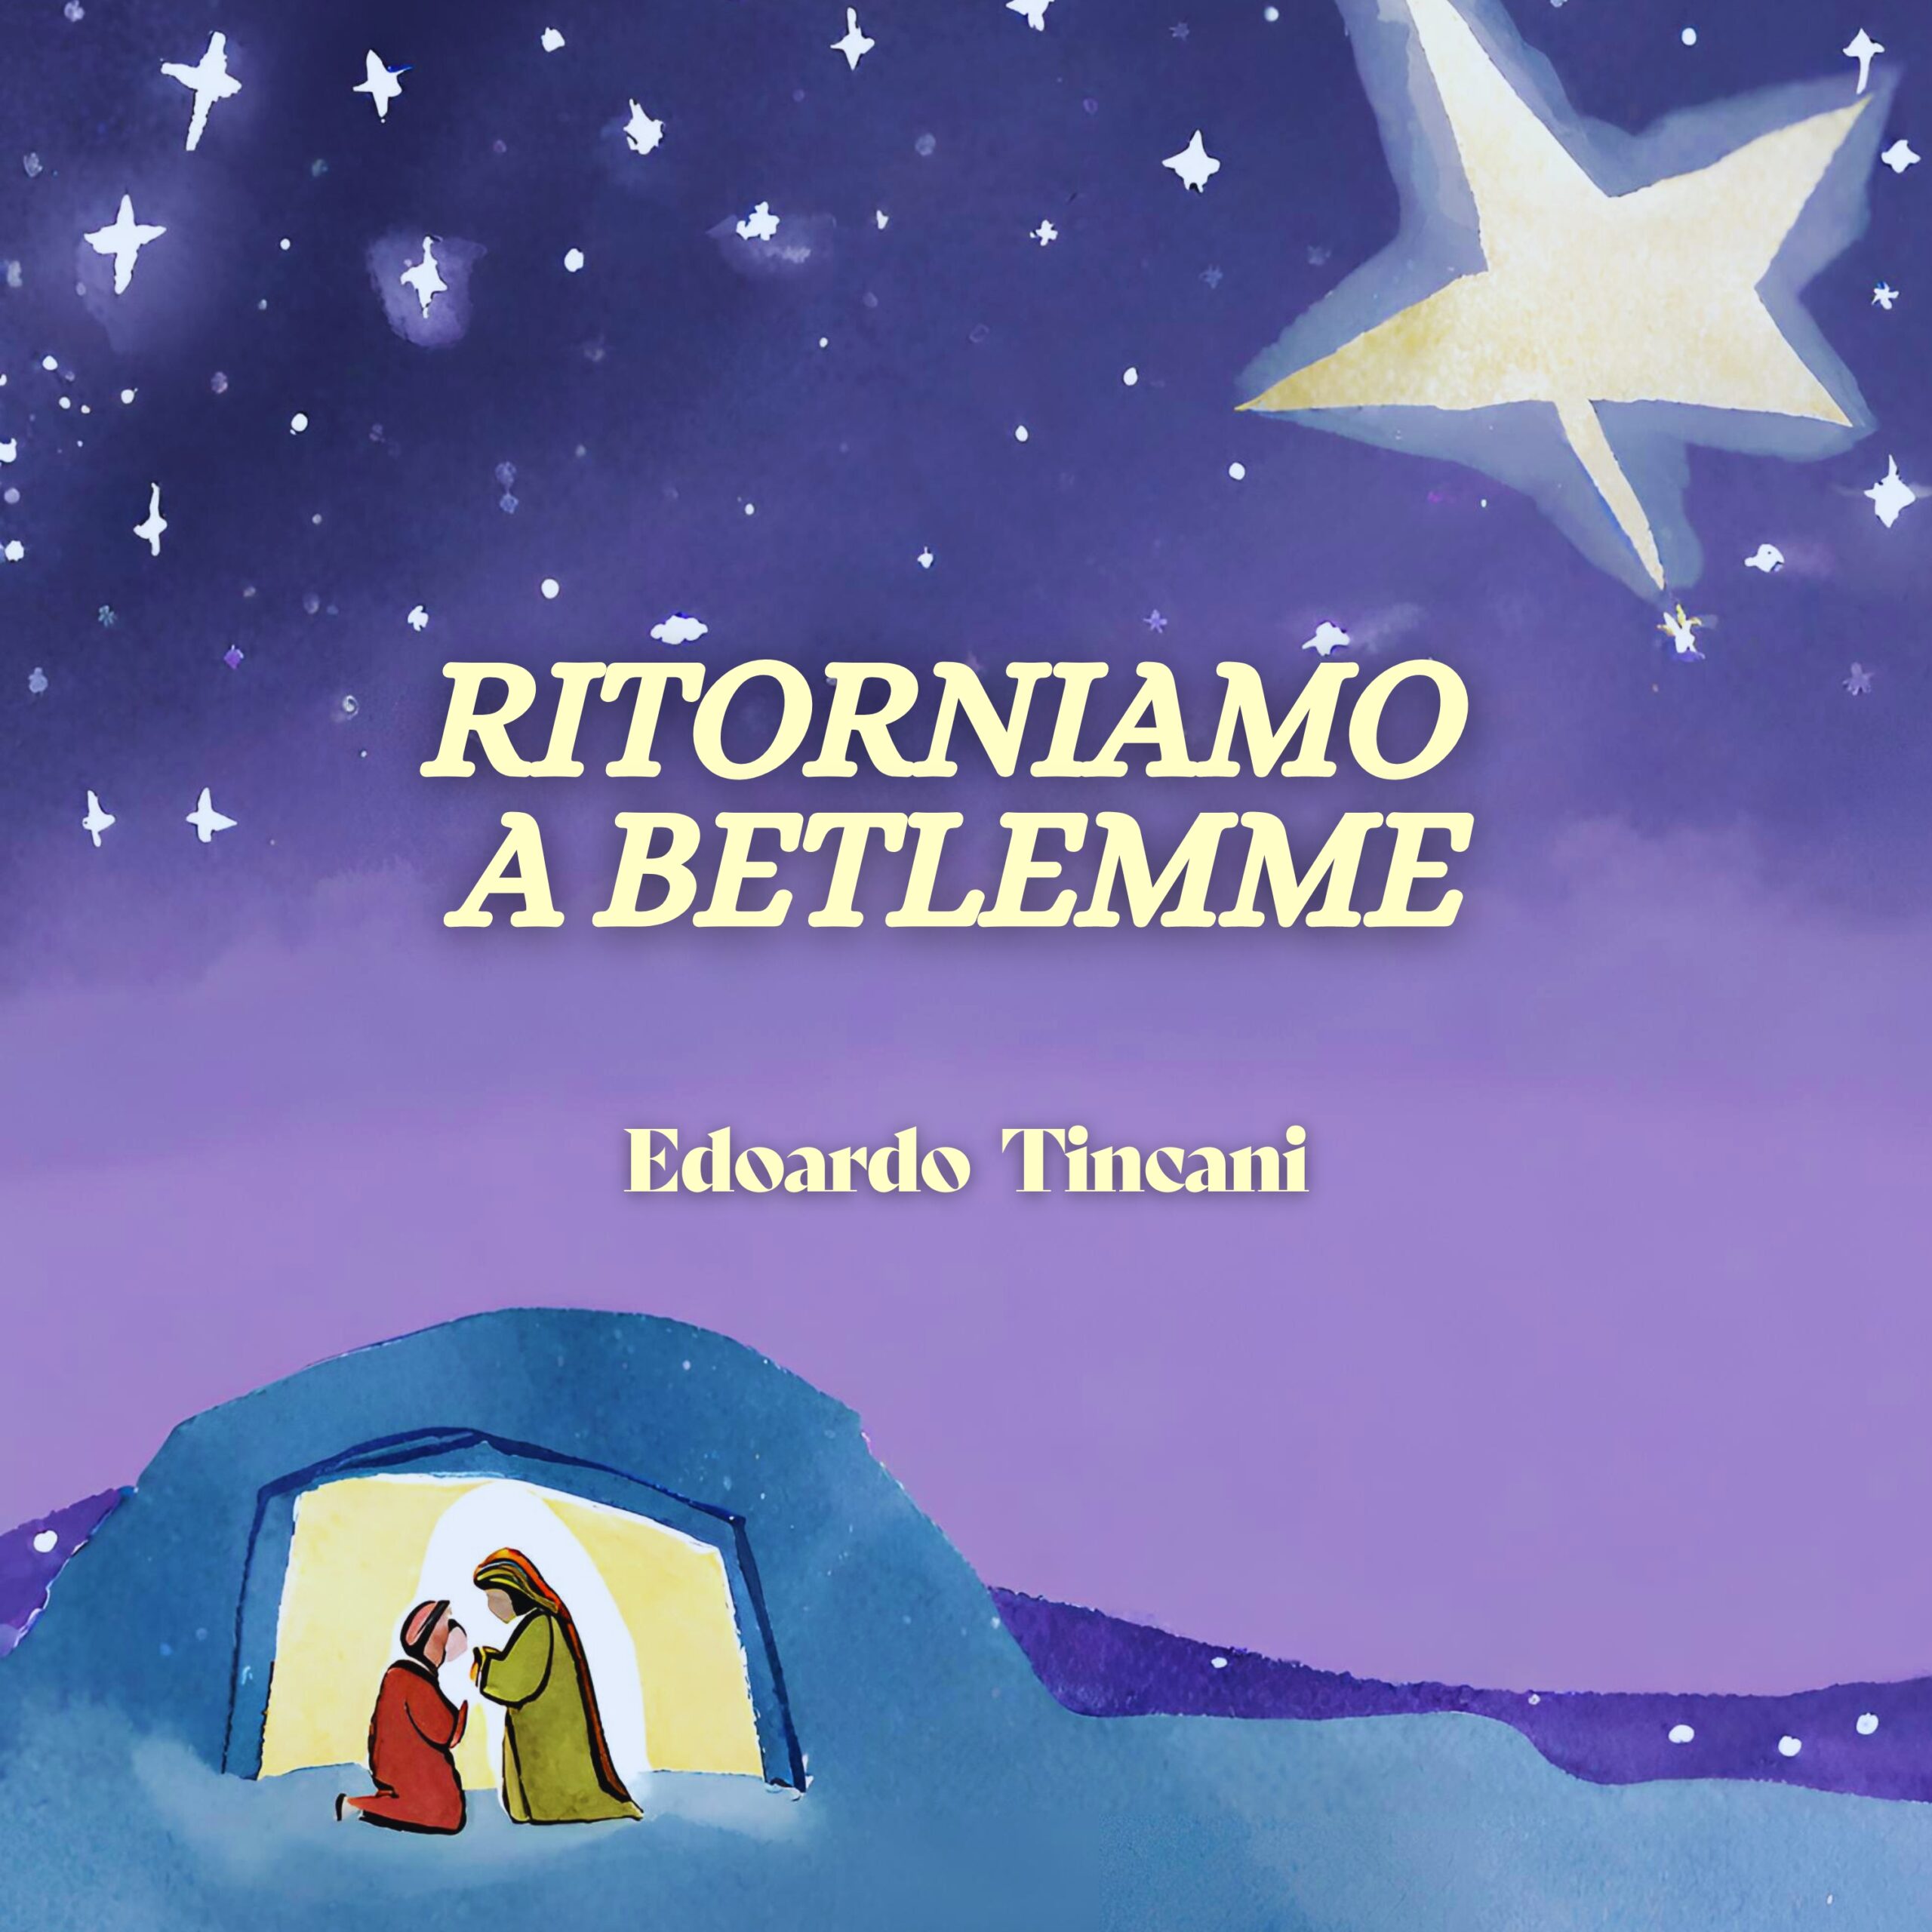 Al momento stai visualizzando “Ritorniamo a Betlemme” con Edoardo Tincani 🌟